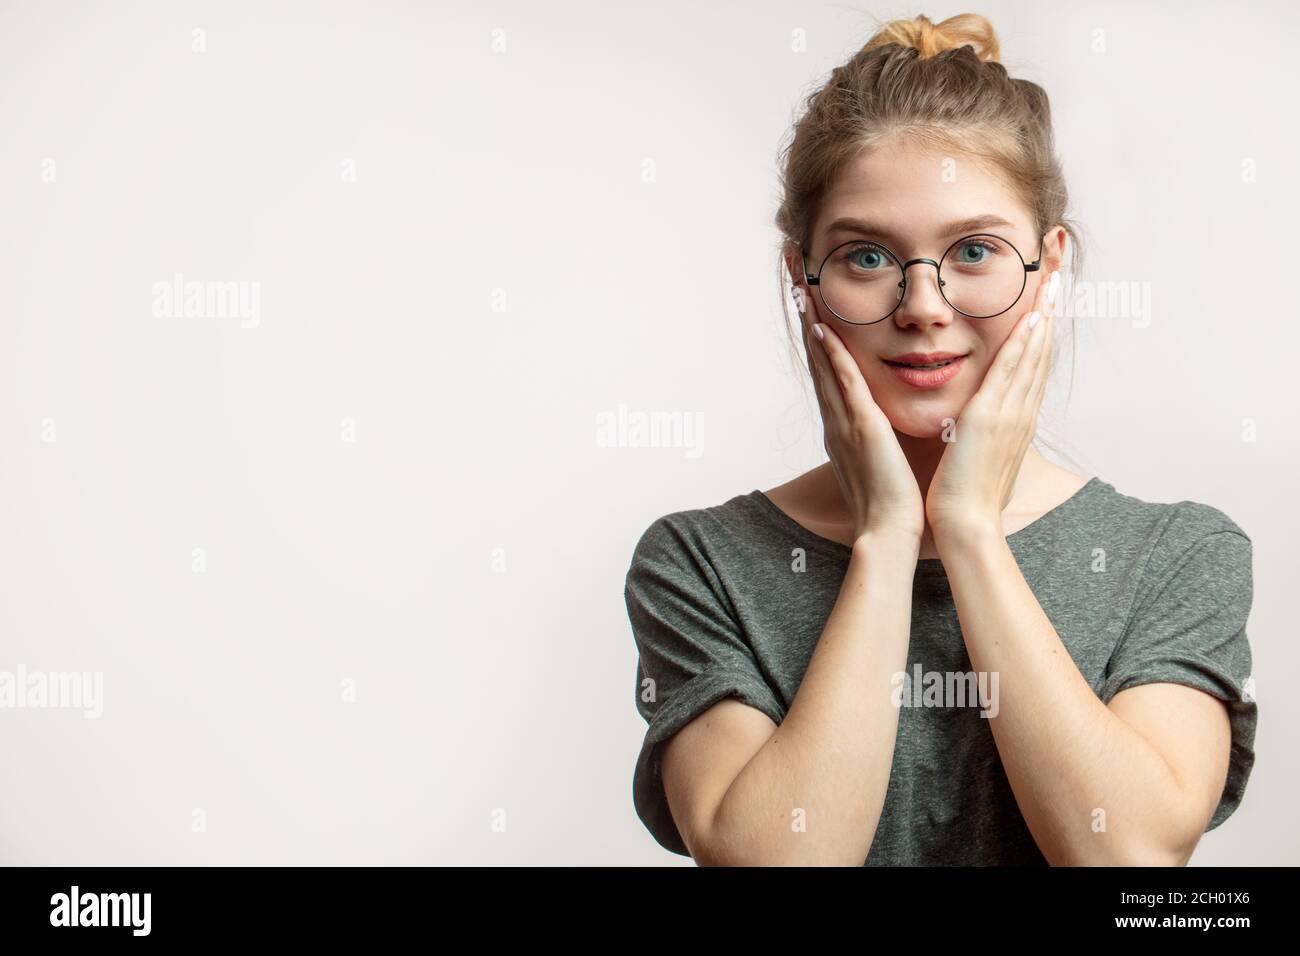 Schockiert überrascht Frau mit runden Augen in Brille Blick auf die Kamera, die Hände angehoben, um Gesicht, erstaunt zu hören, dass Verkauf auf Wohnung käuflich Stockfoto